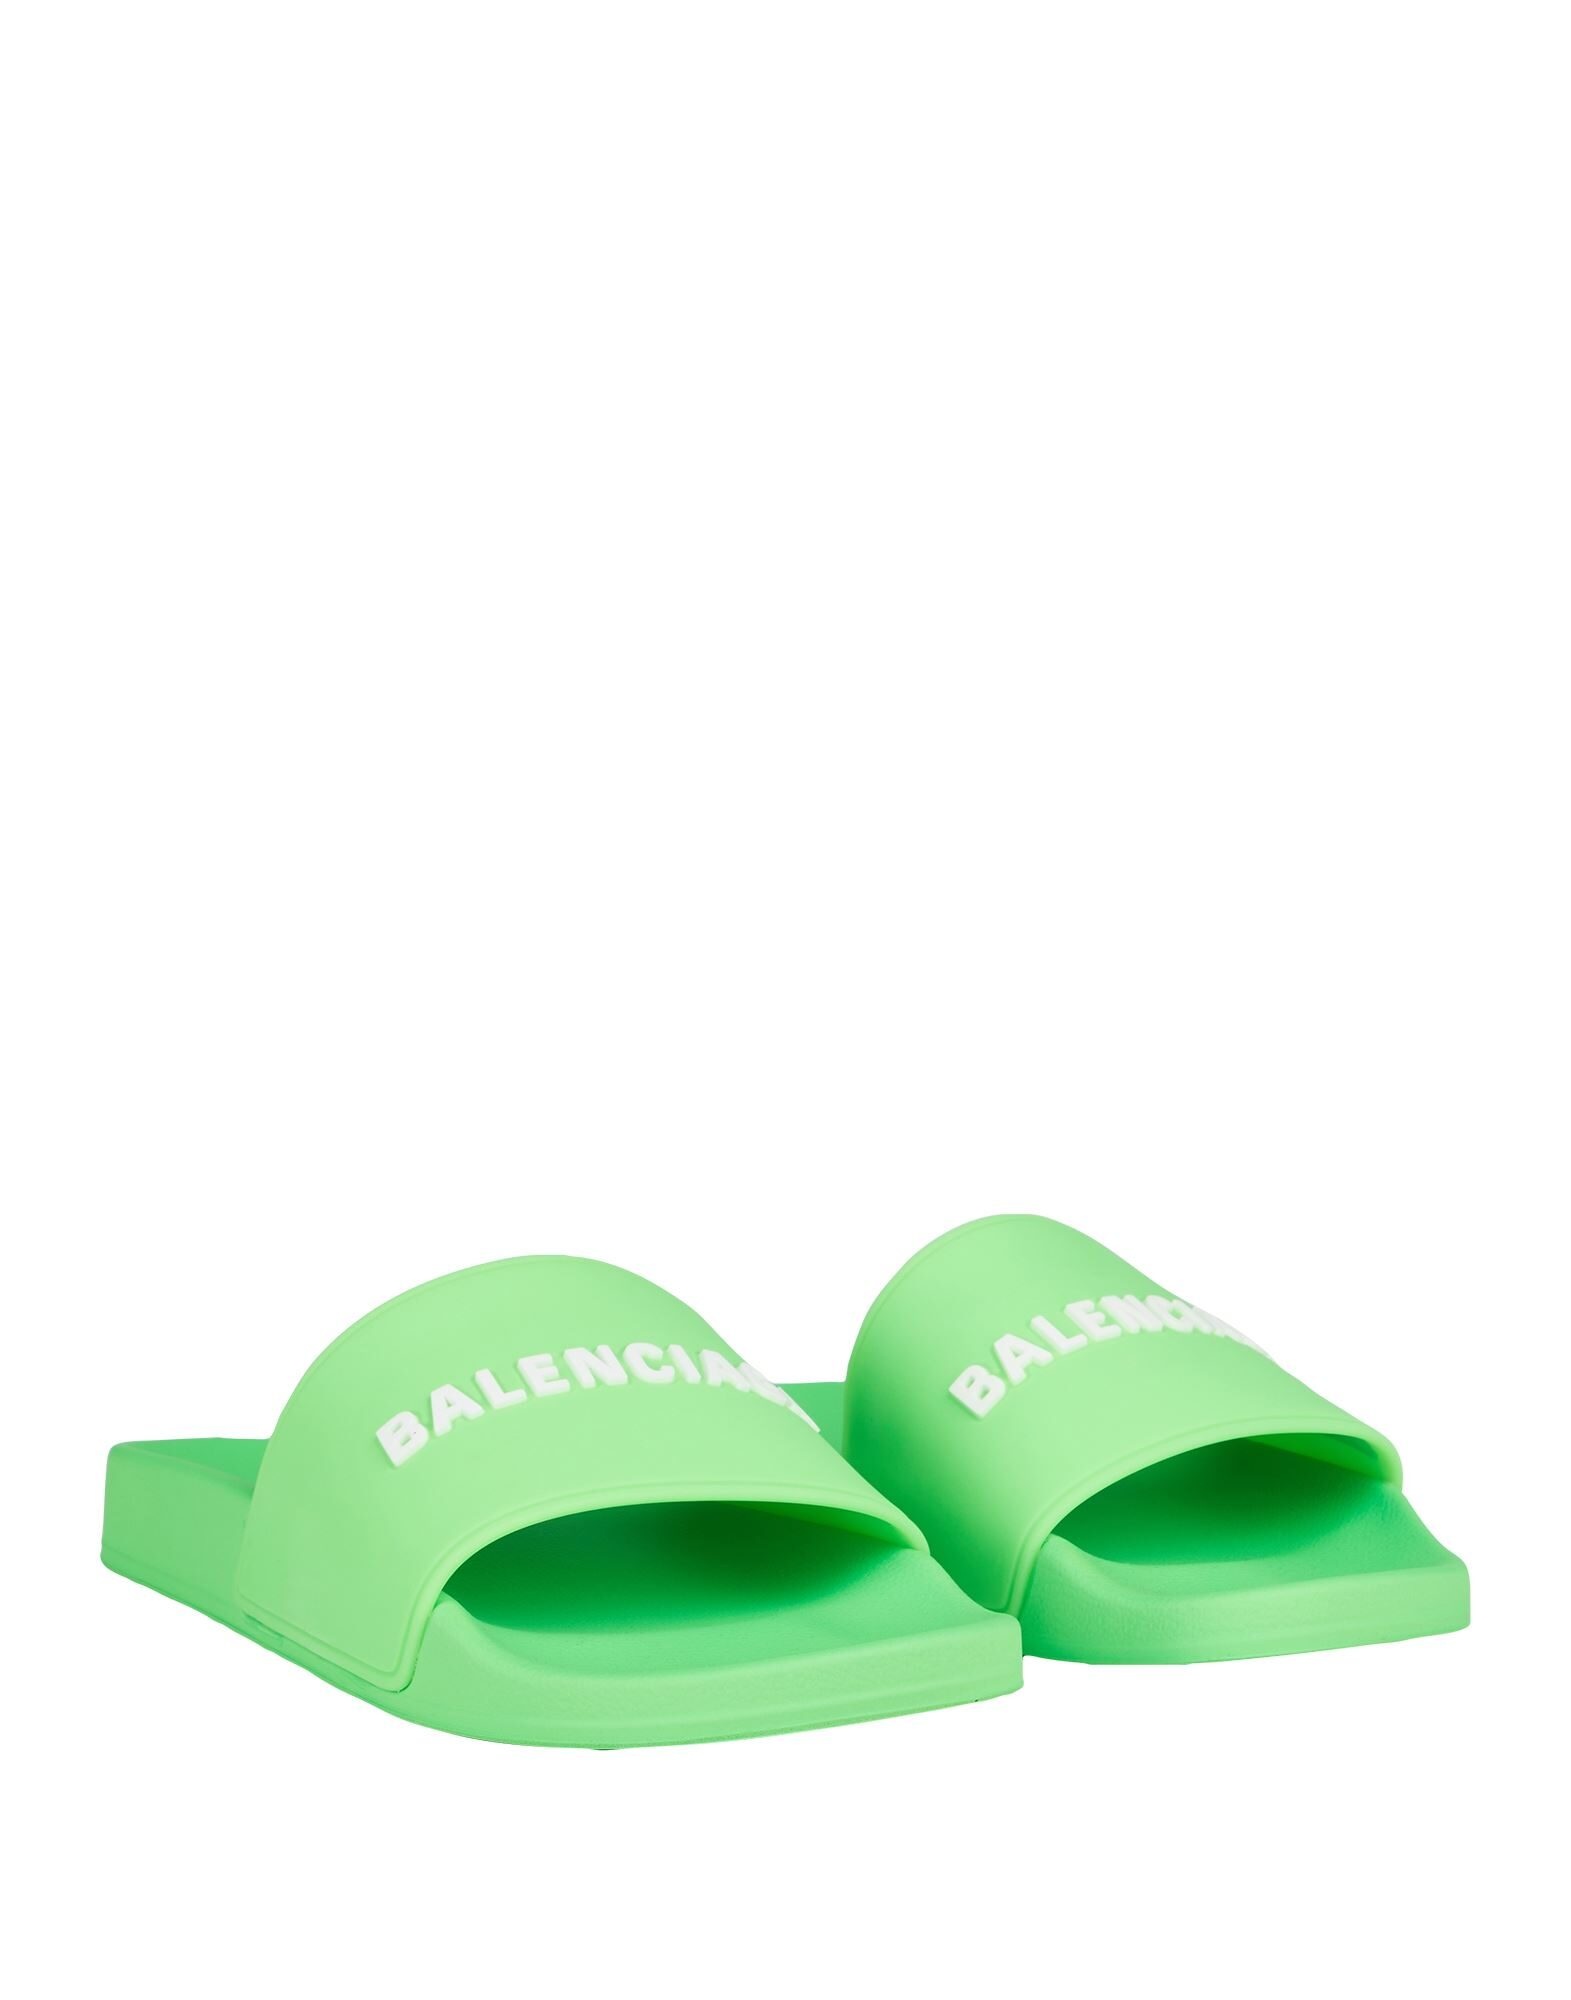 Green Men's Sandals - 2